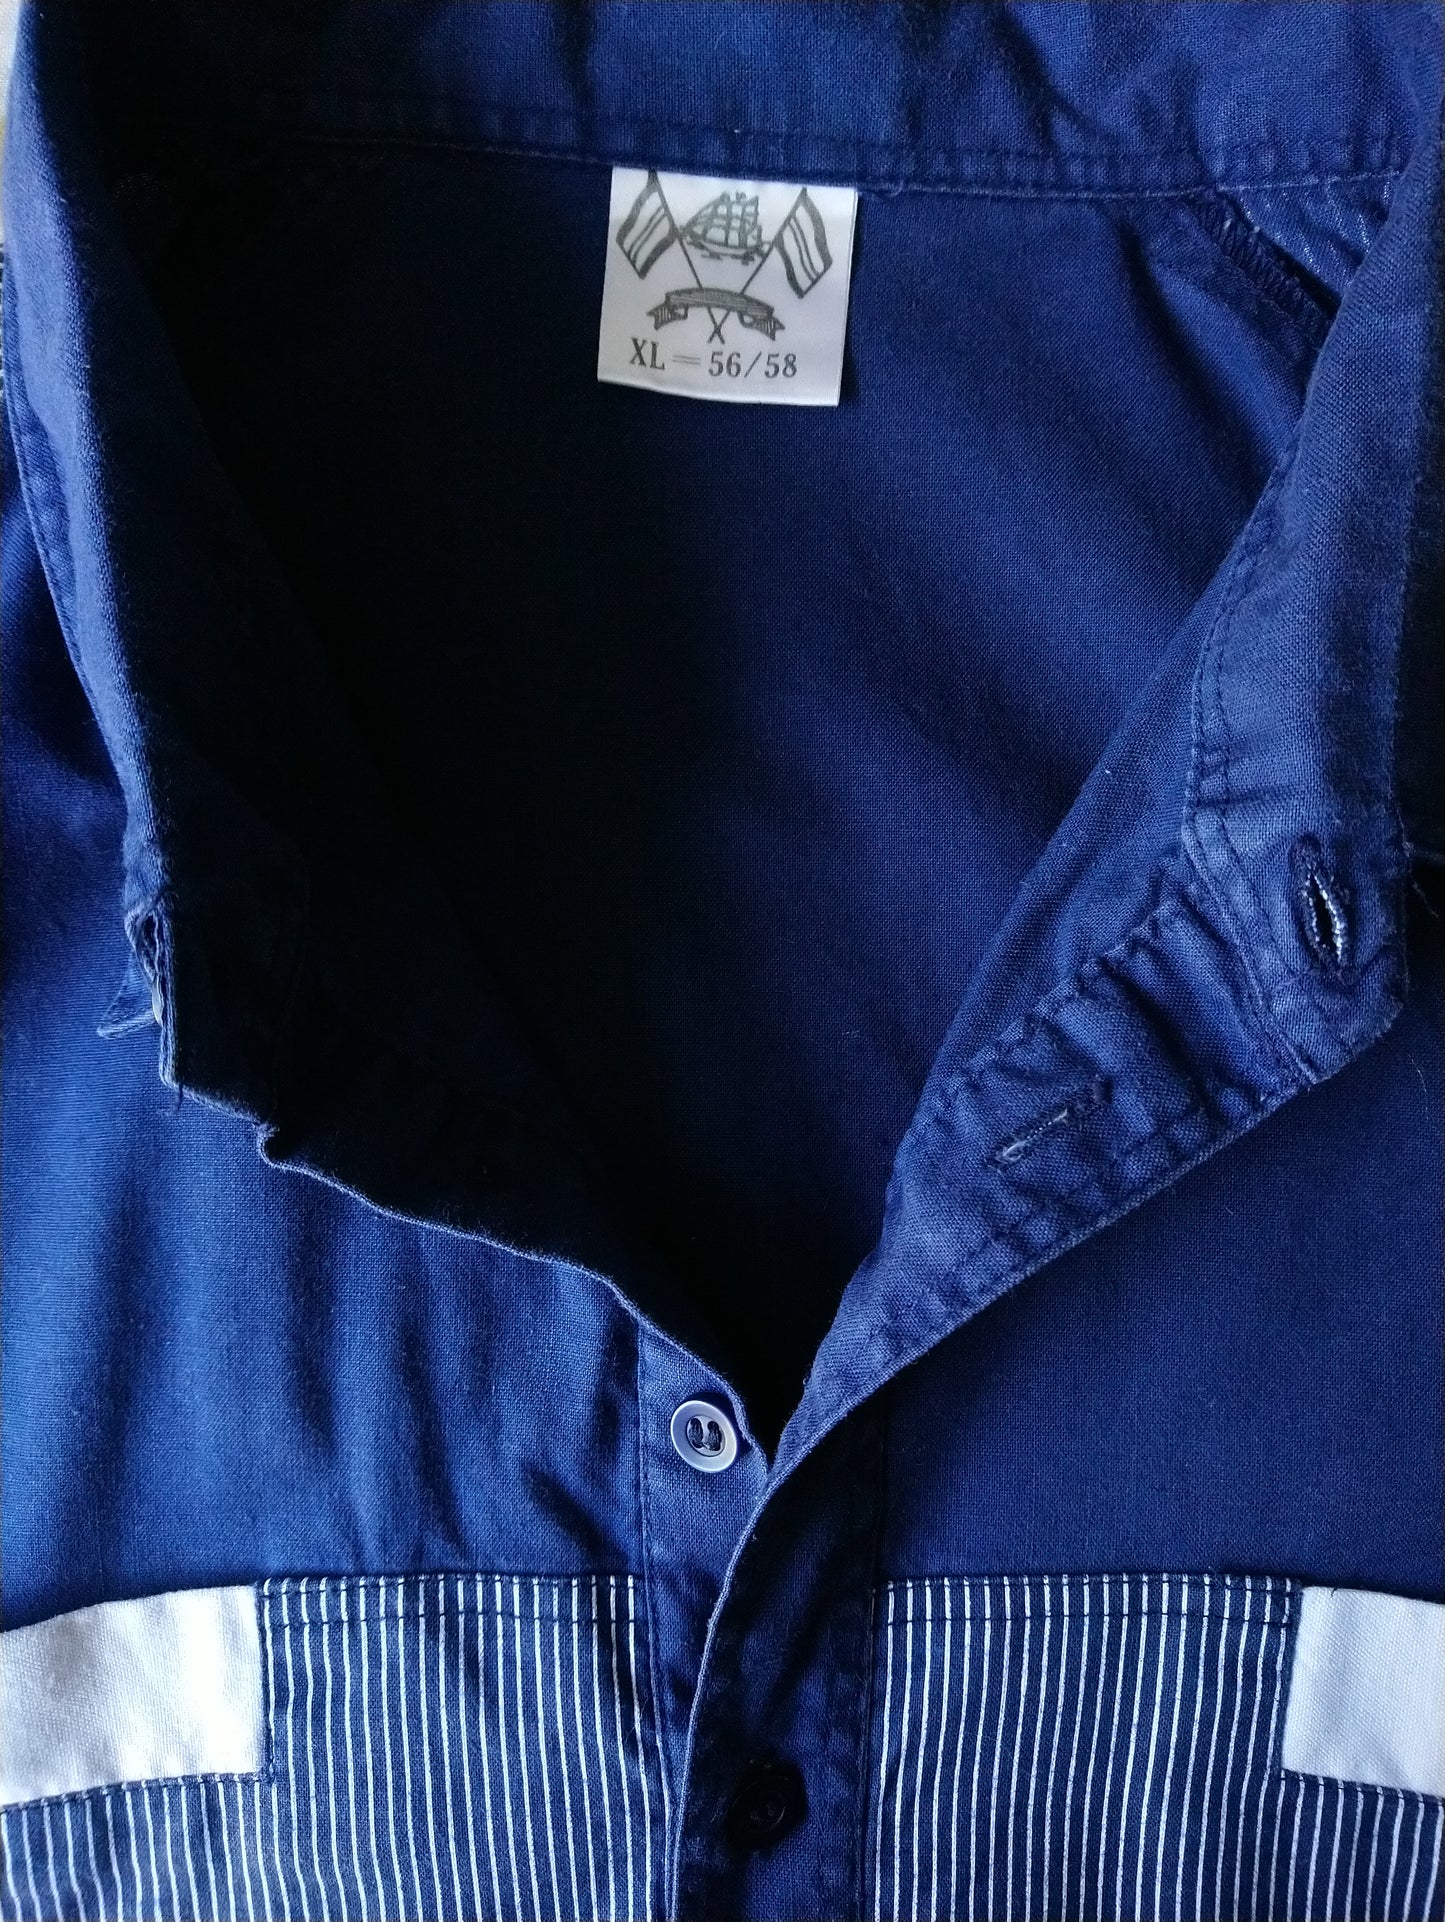 Vintage Polo mit Gummiband. Blau weiß gefärbt. Größe xl / xxl-2xl.